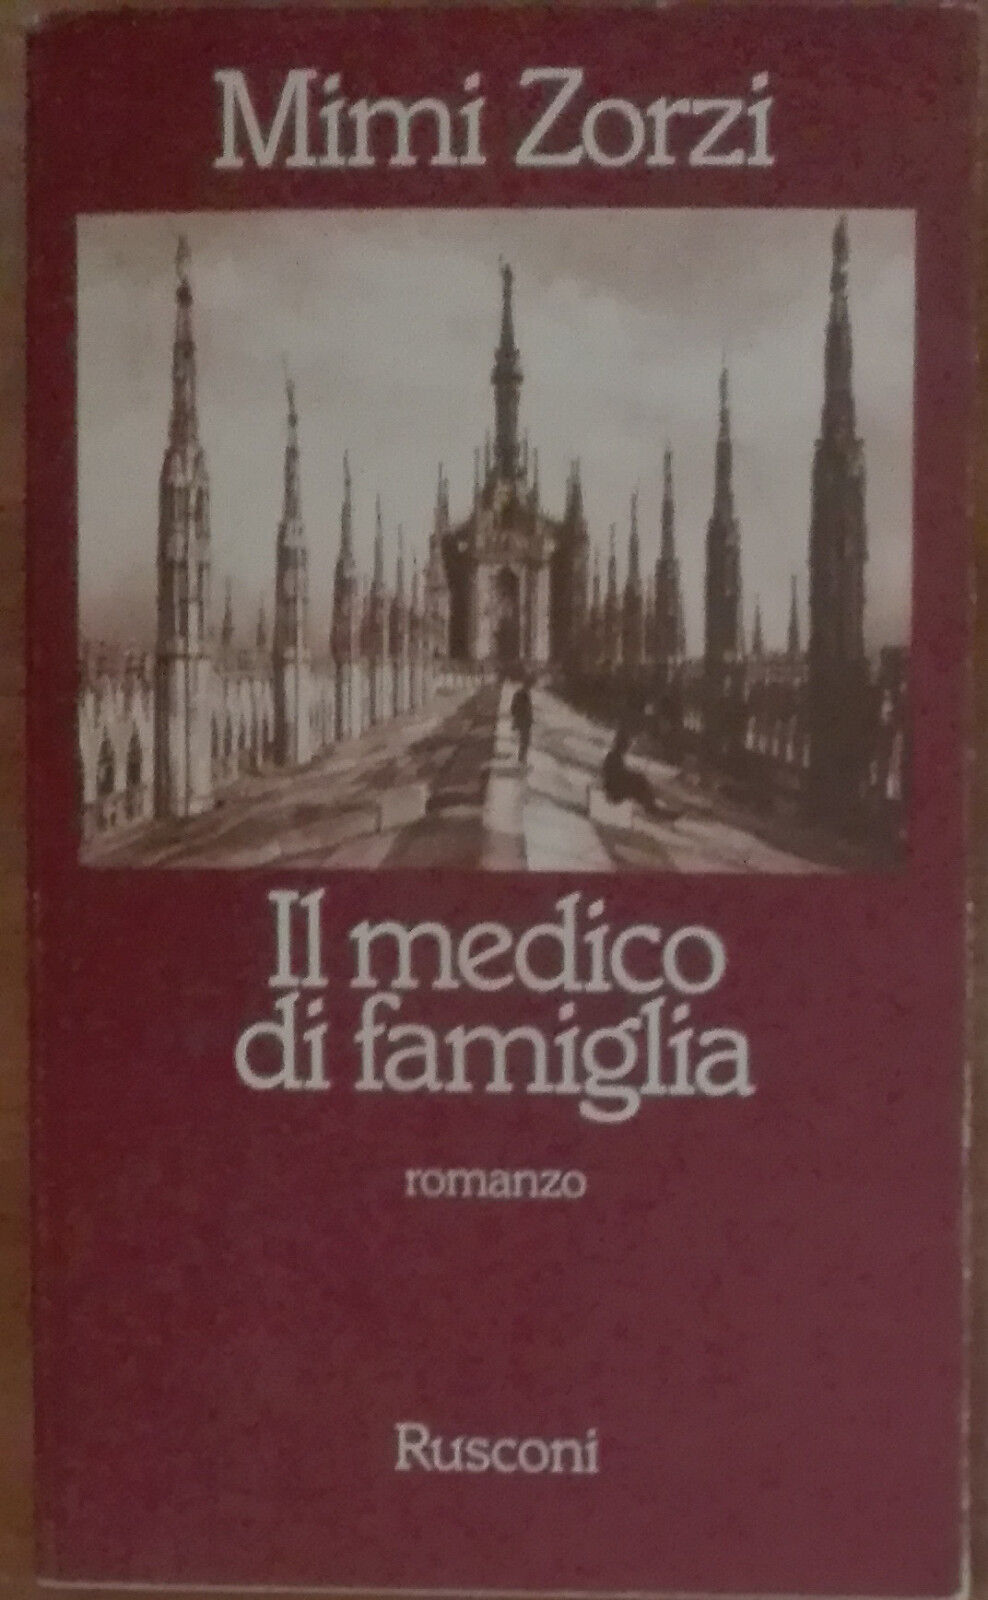 Il medico di famiglia -  Mimi Zorzi - Rusconi,1981 - A